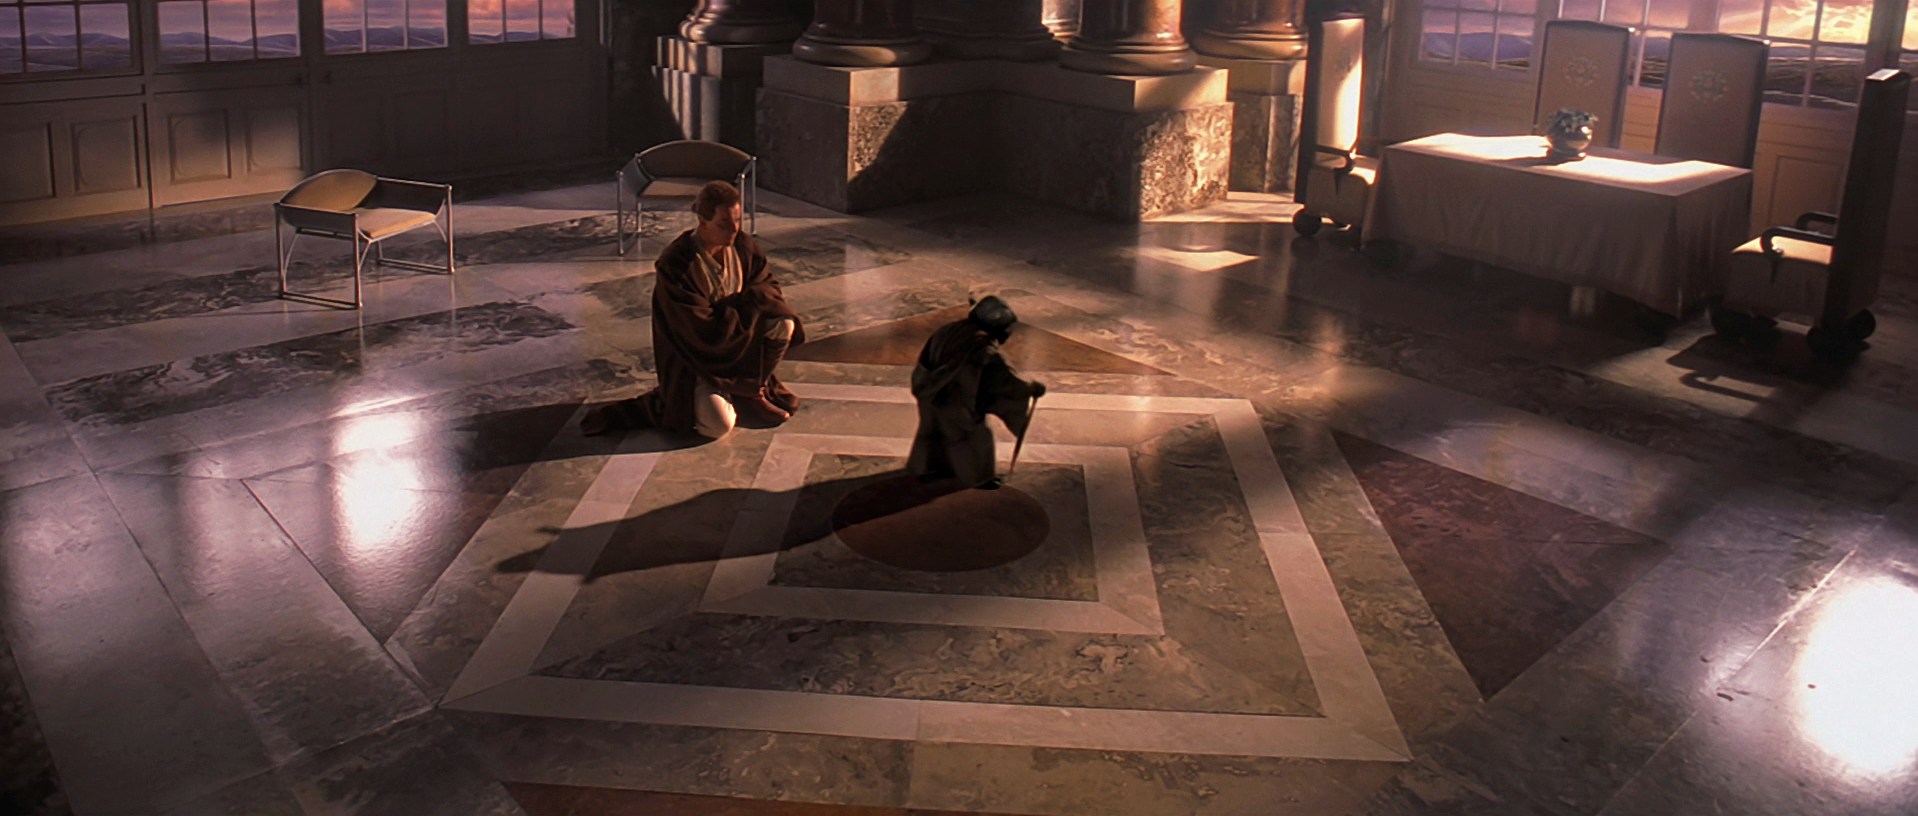 Plik:Yoda i Obi-Wan w Sali Wiezowej.png